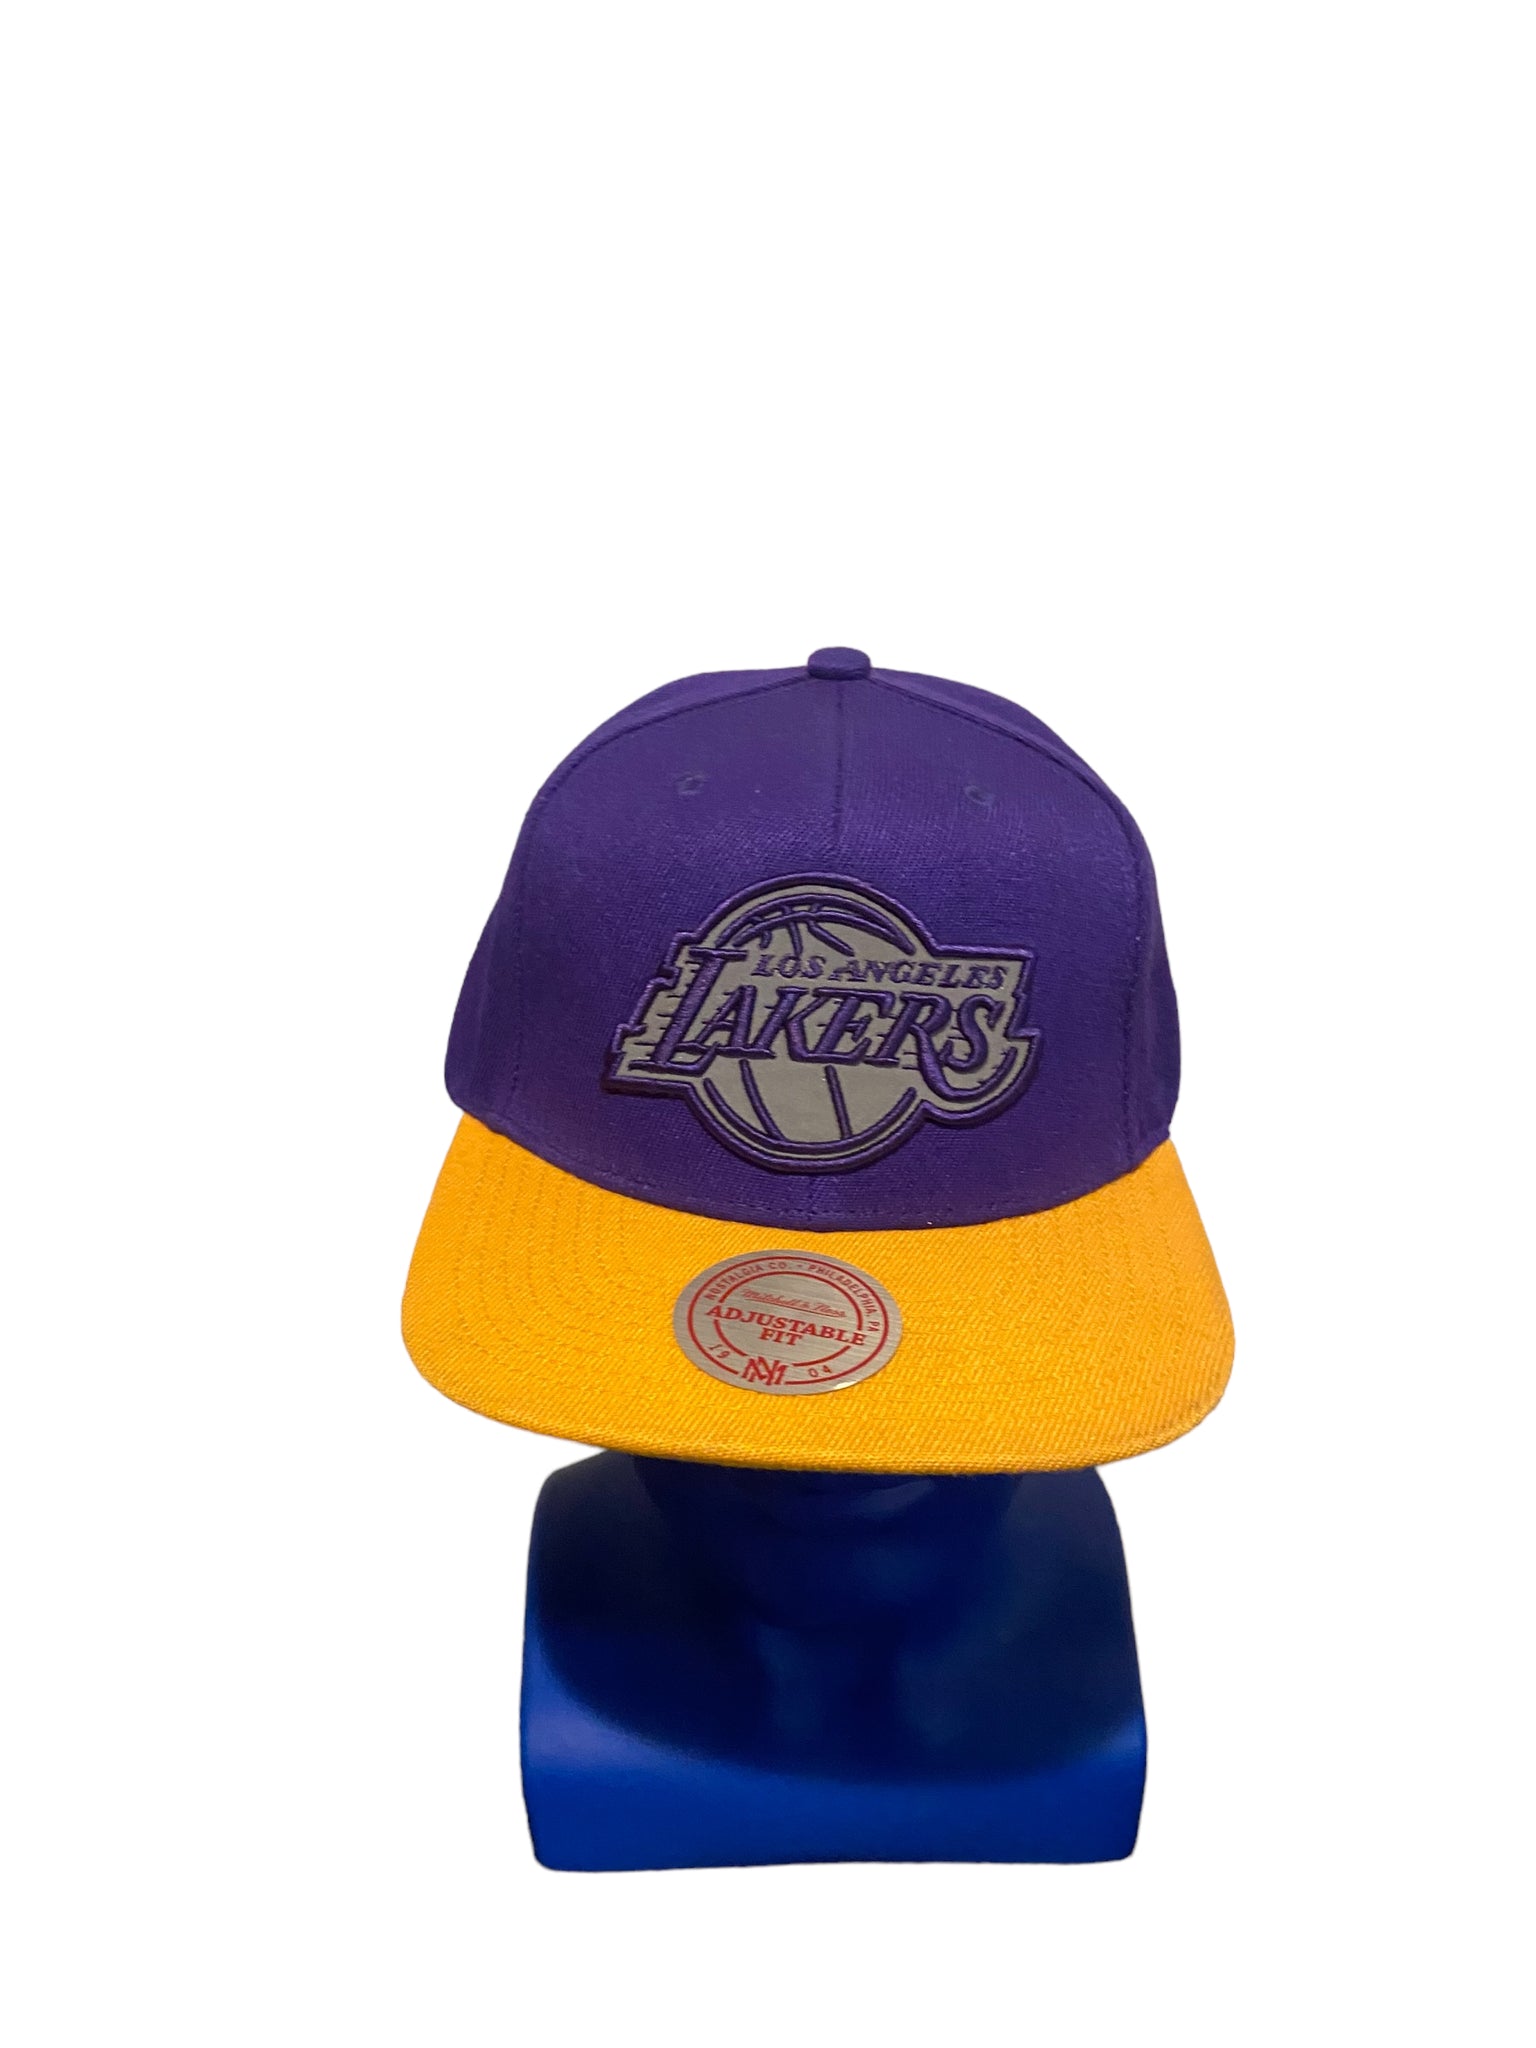 Los Angeles Lakers New Era 9Fifty Purple Adjustable Snapback Hat